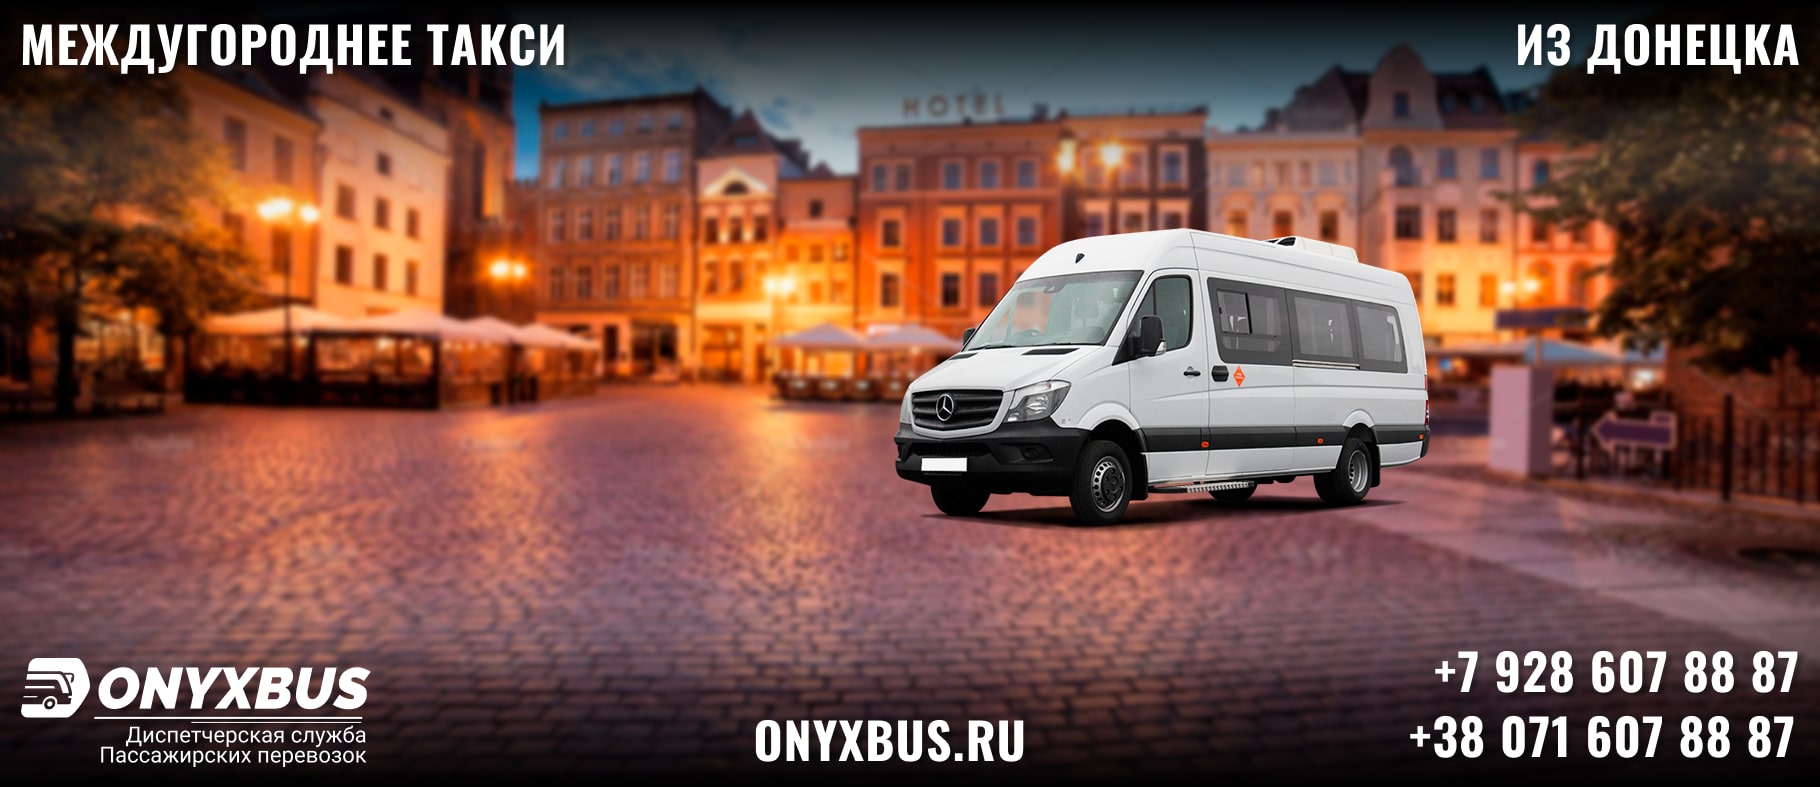 Заказ <br>Микроавтобуса Донецк - Саратов